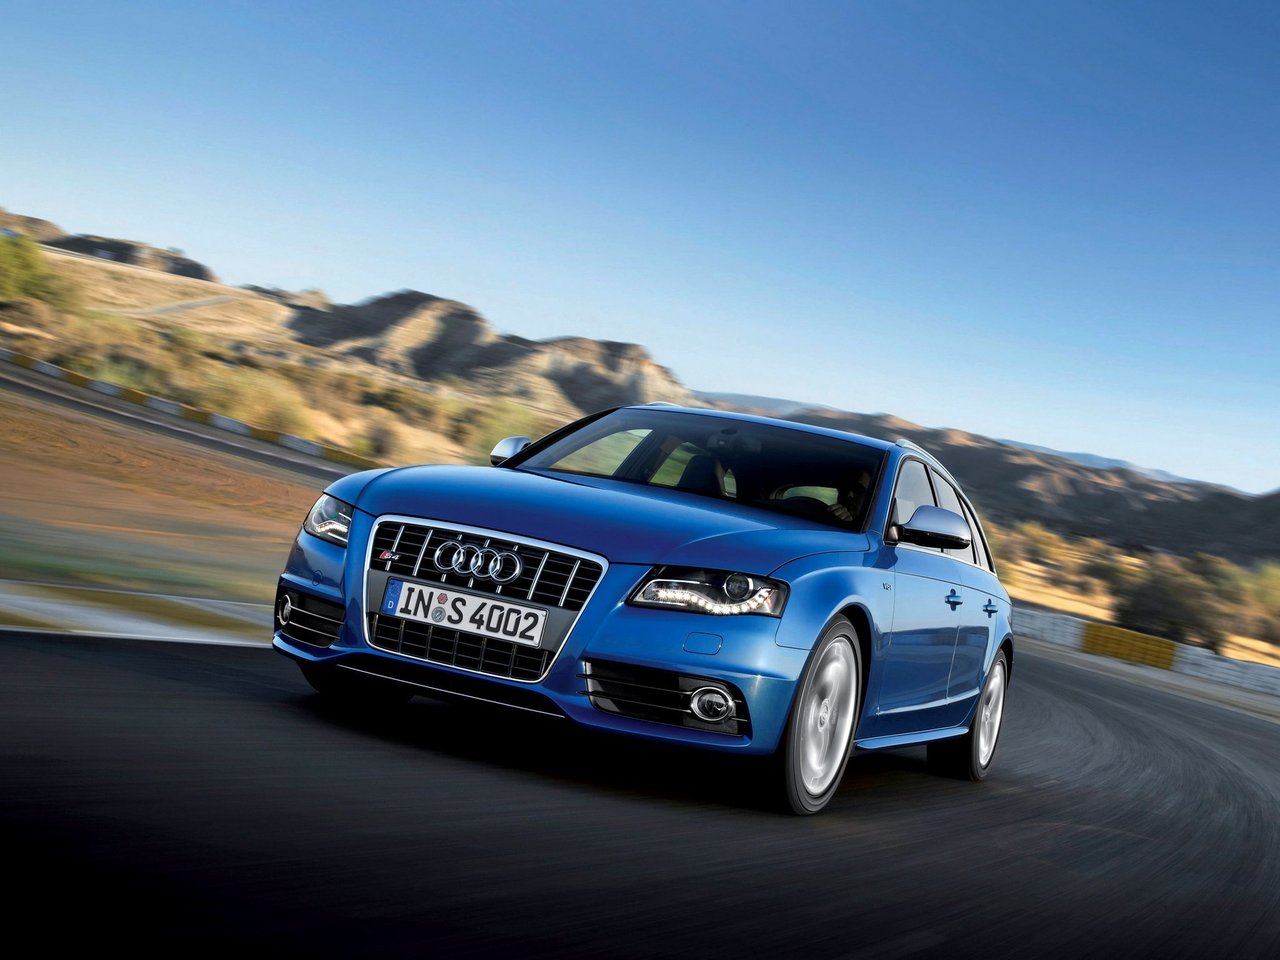 Снижаем расход Audi S4 на топливо, устанавливаем ГБО